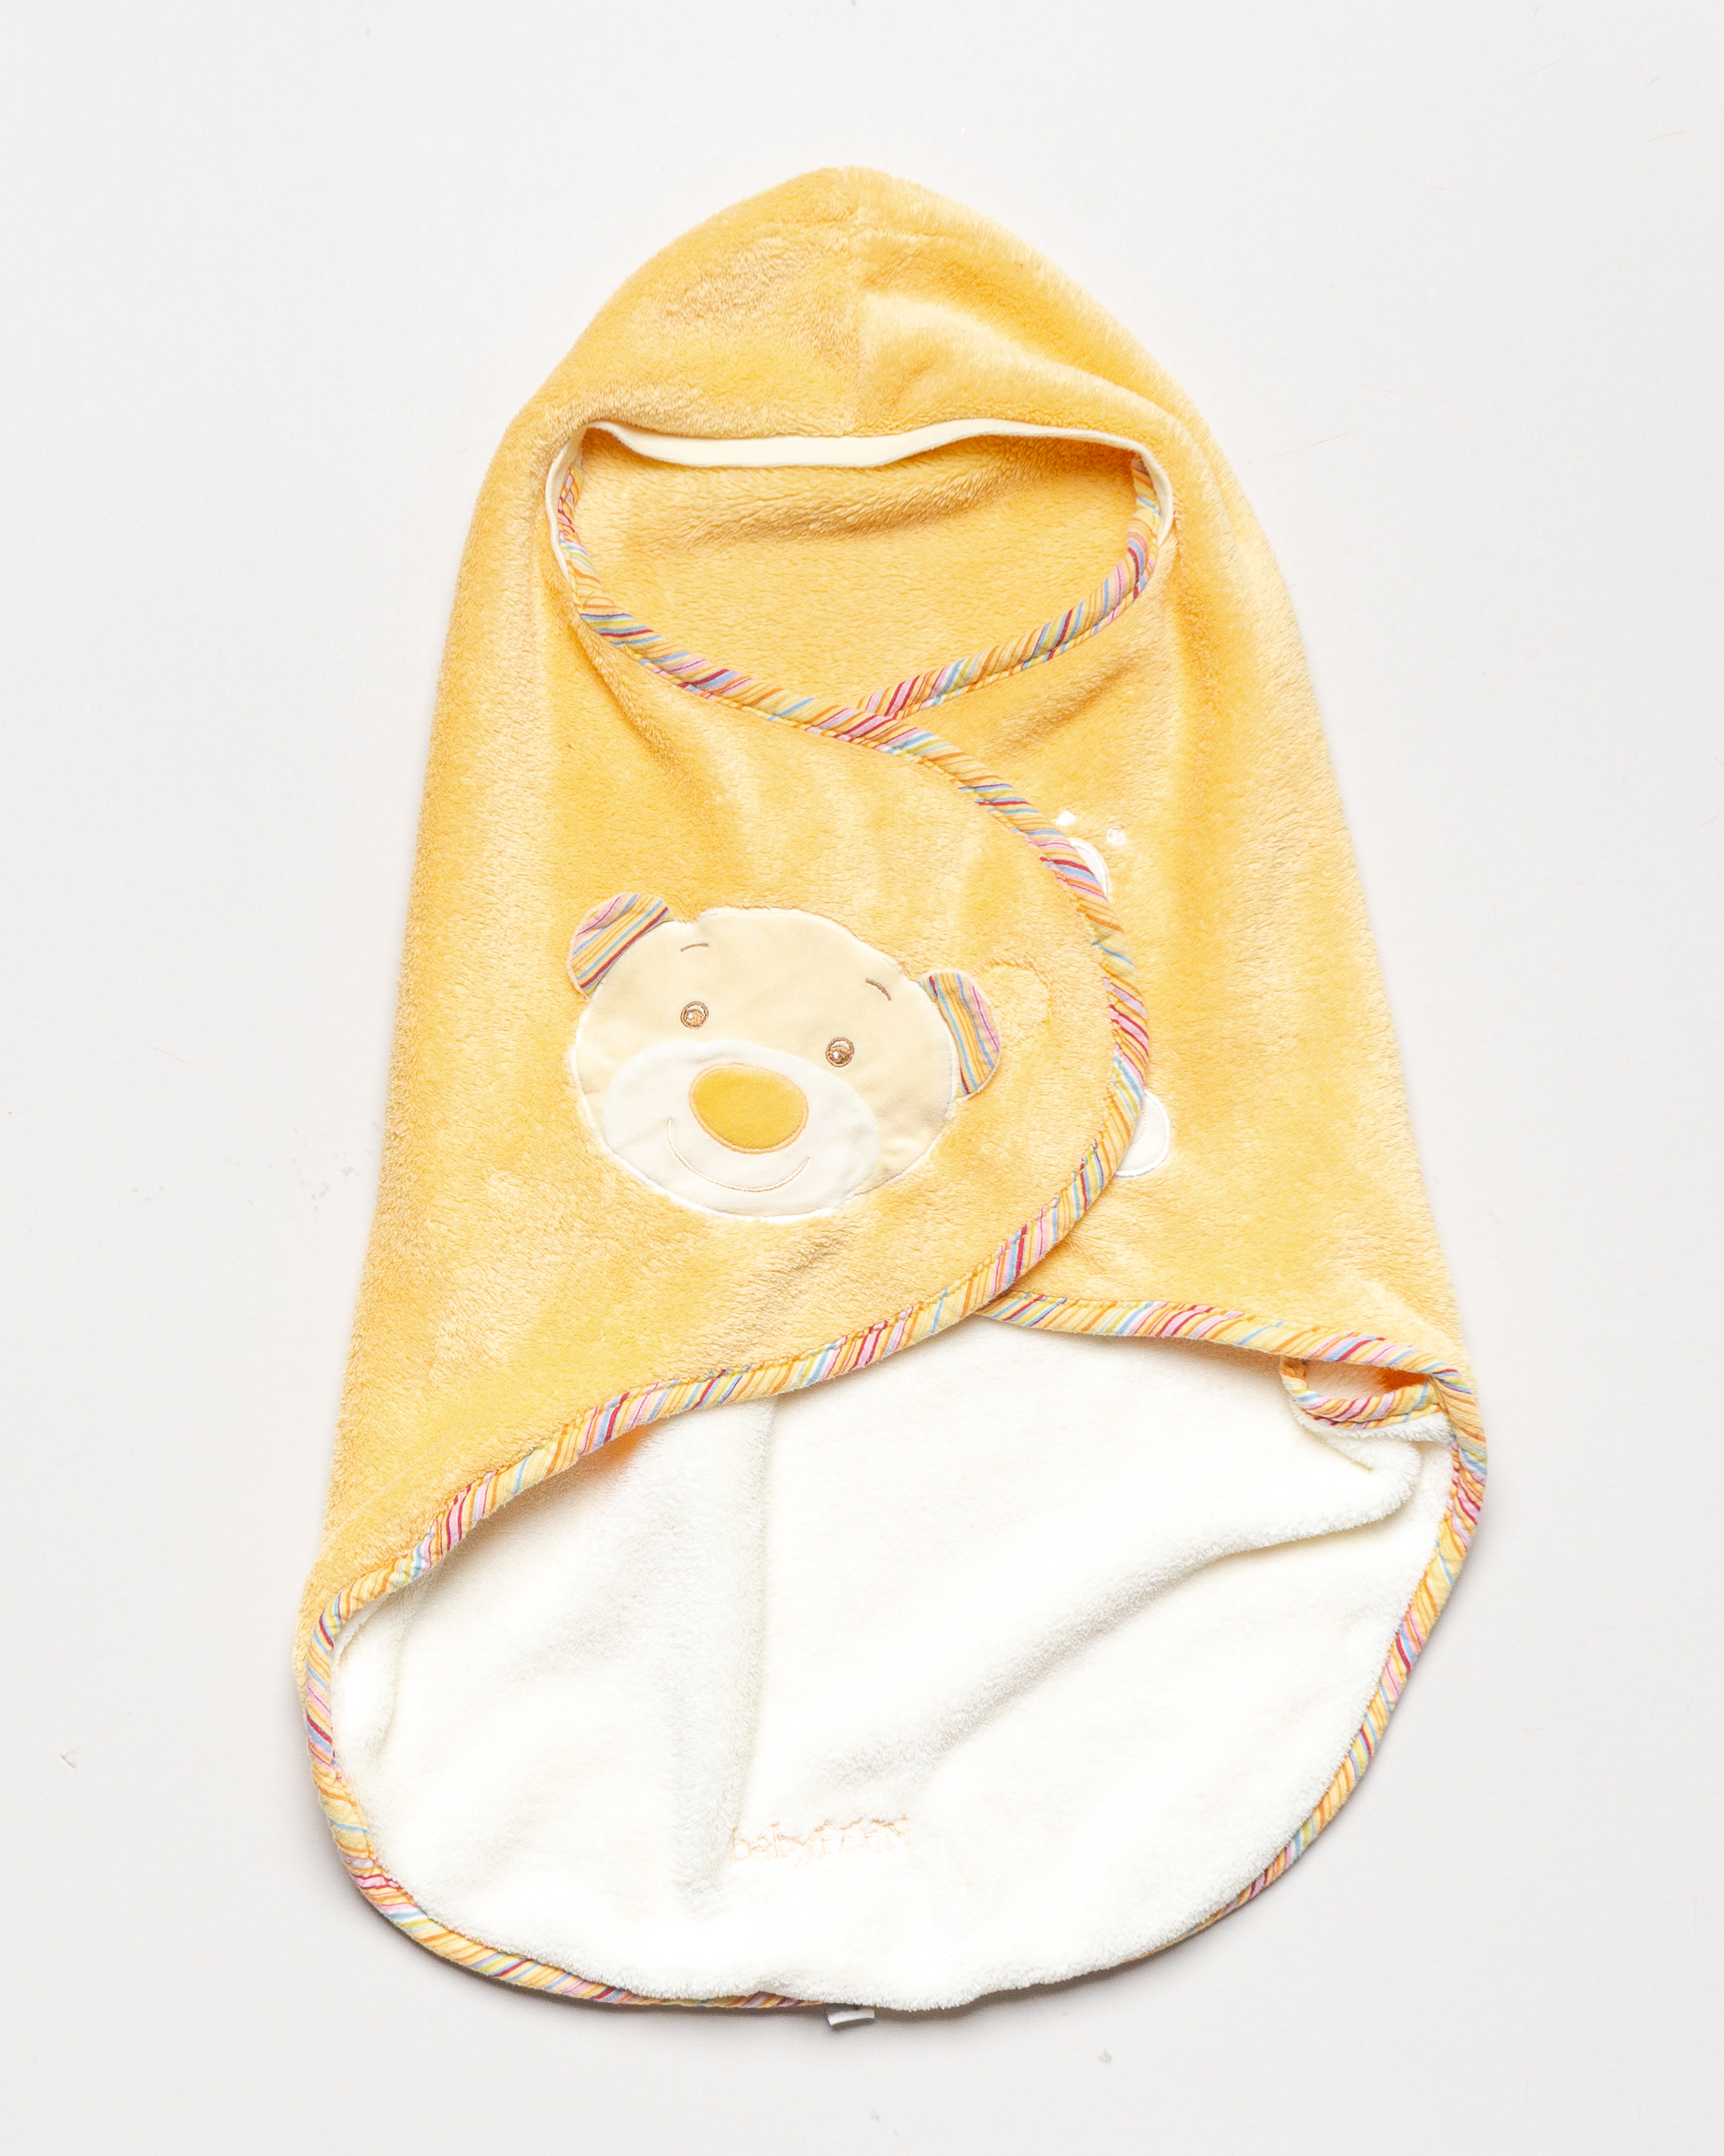 Schlafsack Gr. 62 – Pucksack Einschlagdecke Maxi Cosi Babyschale Gelb Teddy Bär